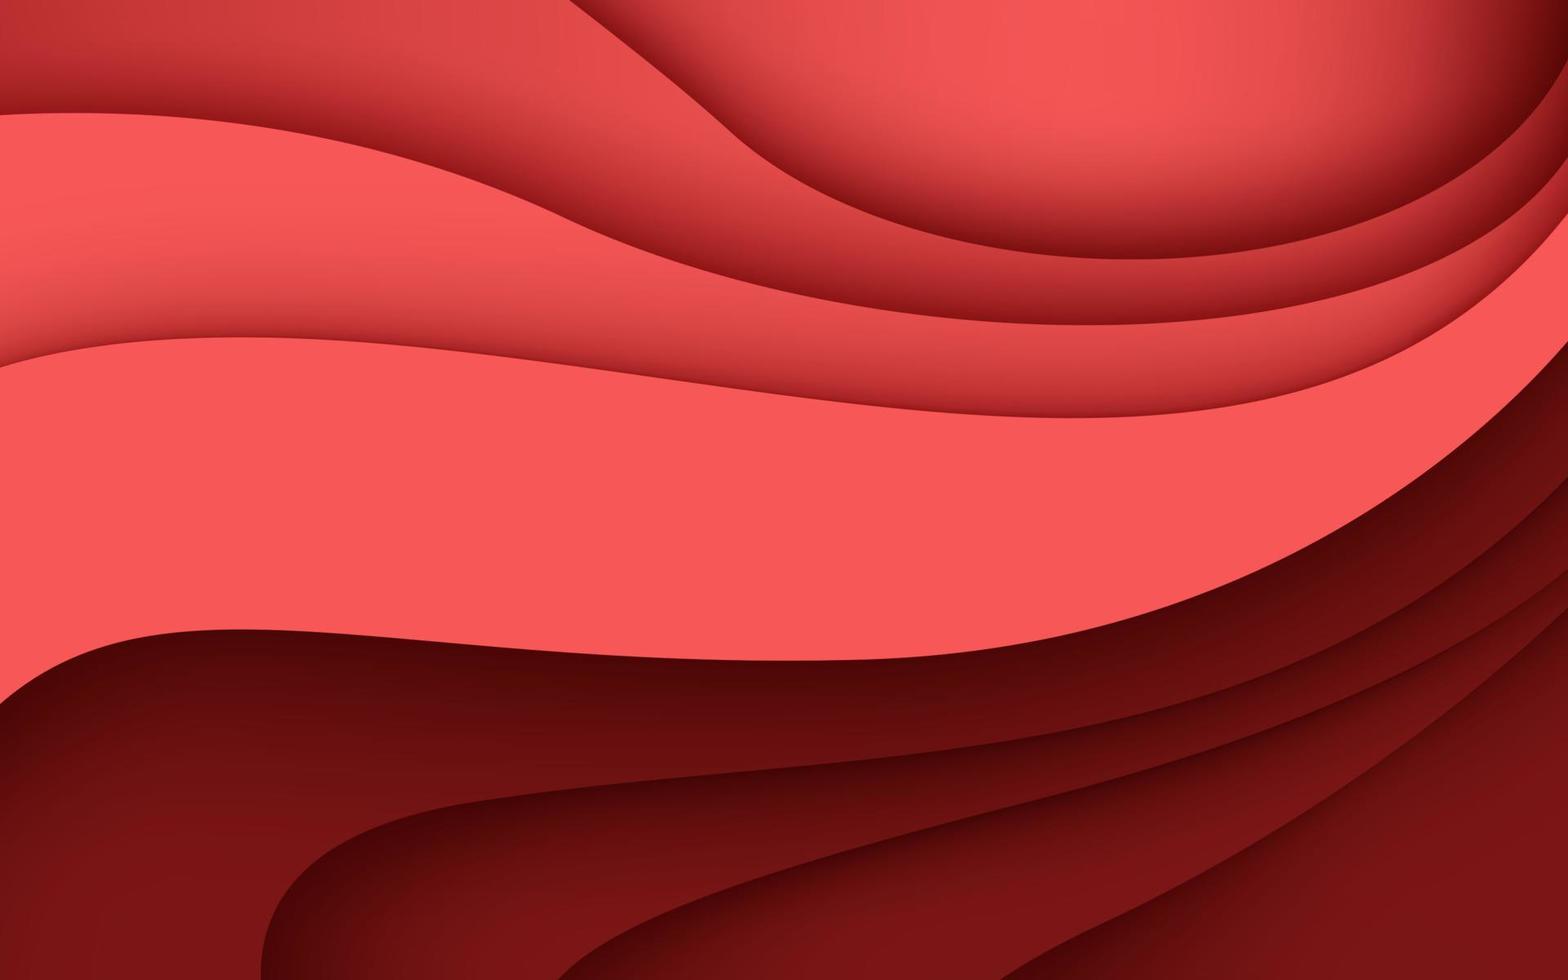 couches de papercut 3d de texture rouge multicouches dans la bannière de vecteur de gradient. conception abstraite de fond d'art découpé en papier pour le modèle de site Web. concept de carte topographique ou coupe de papier origami lisse